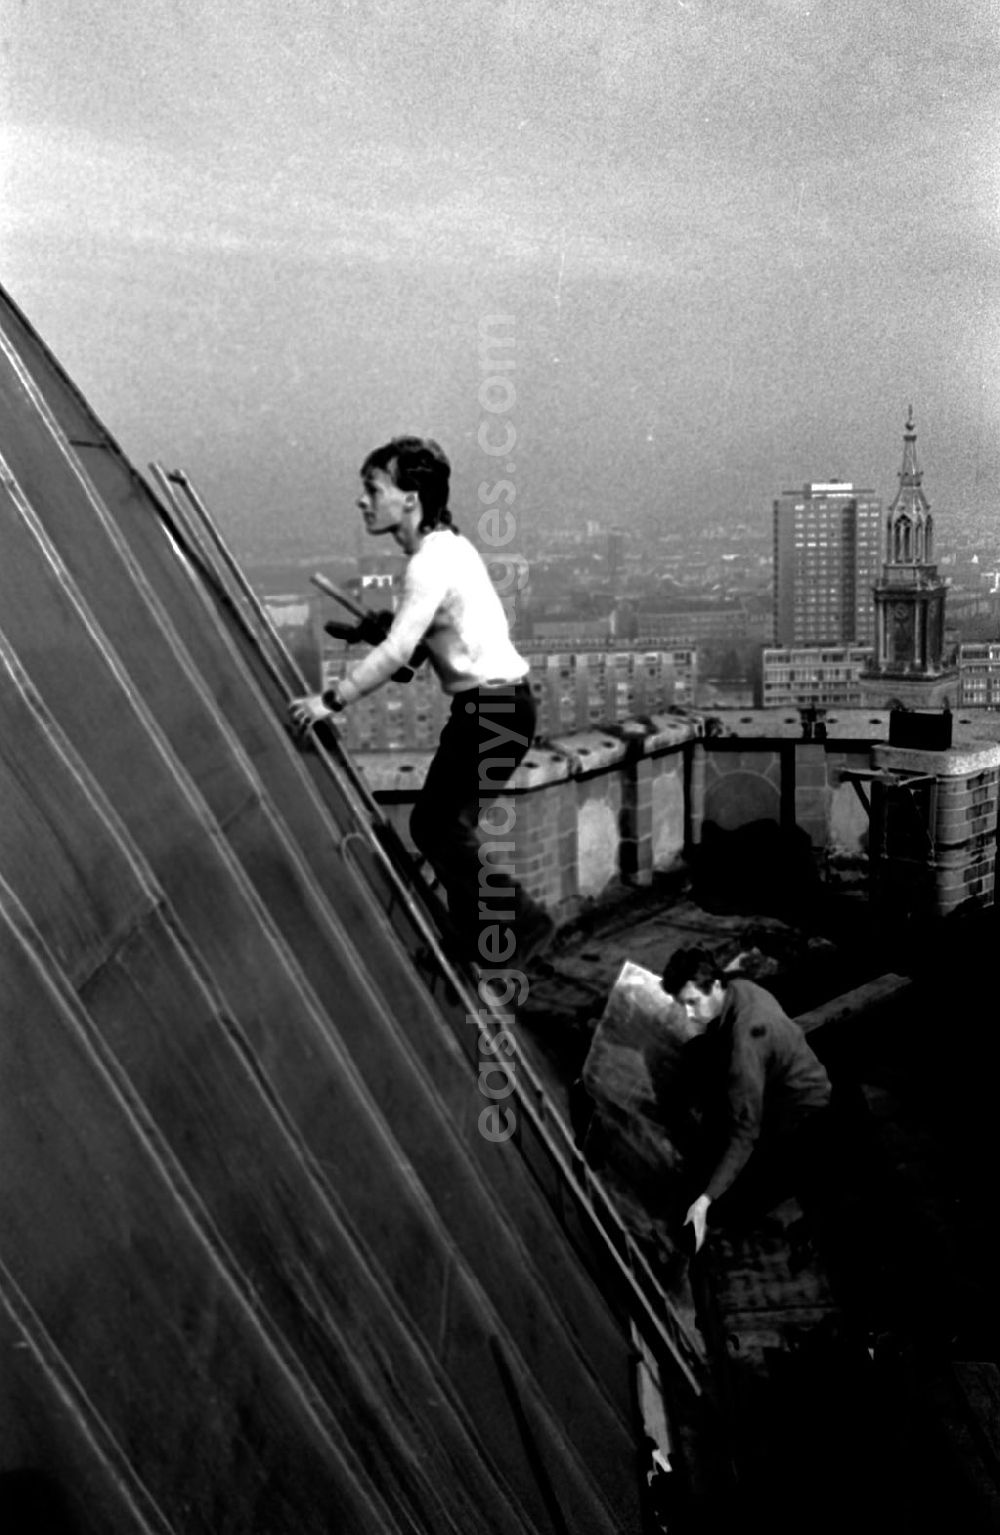 GDR photo archive: Berlin-Mitte - Restaurationsarbeiten am Roten Rathaus (Turmdach) 12.